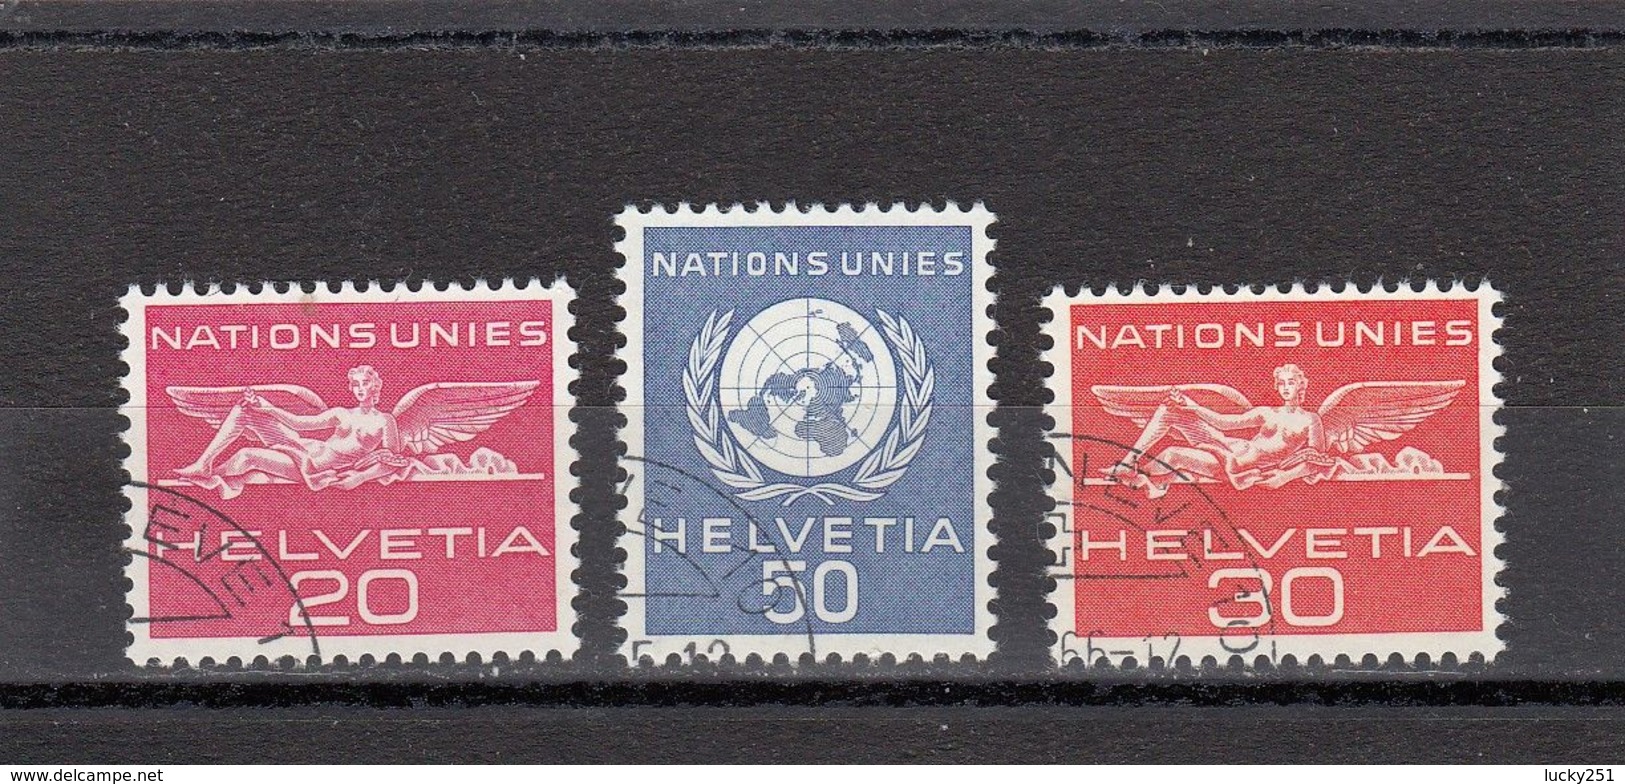 Suisse - Année 1959 - Service - Oblitéré - N°Zumstein 28/30 - ONU - Sujets Symboliques - Service